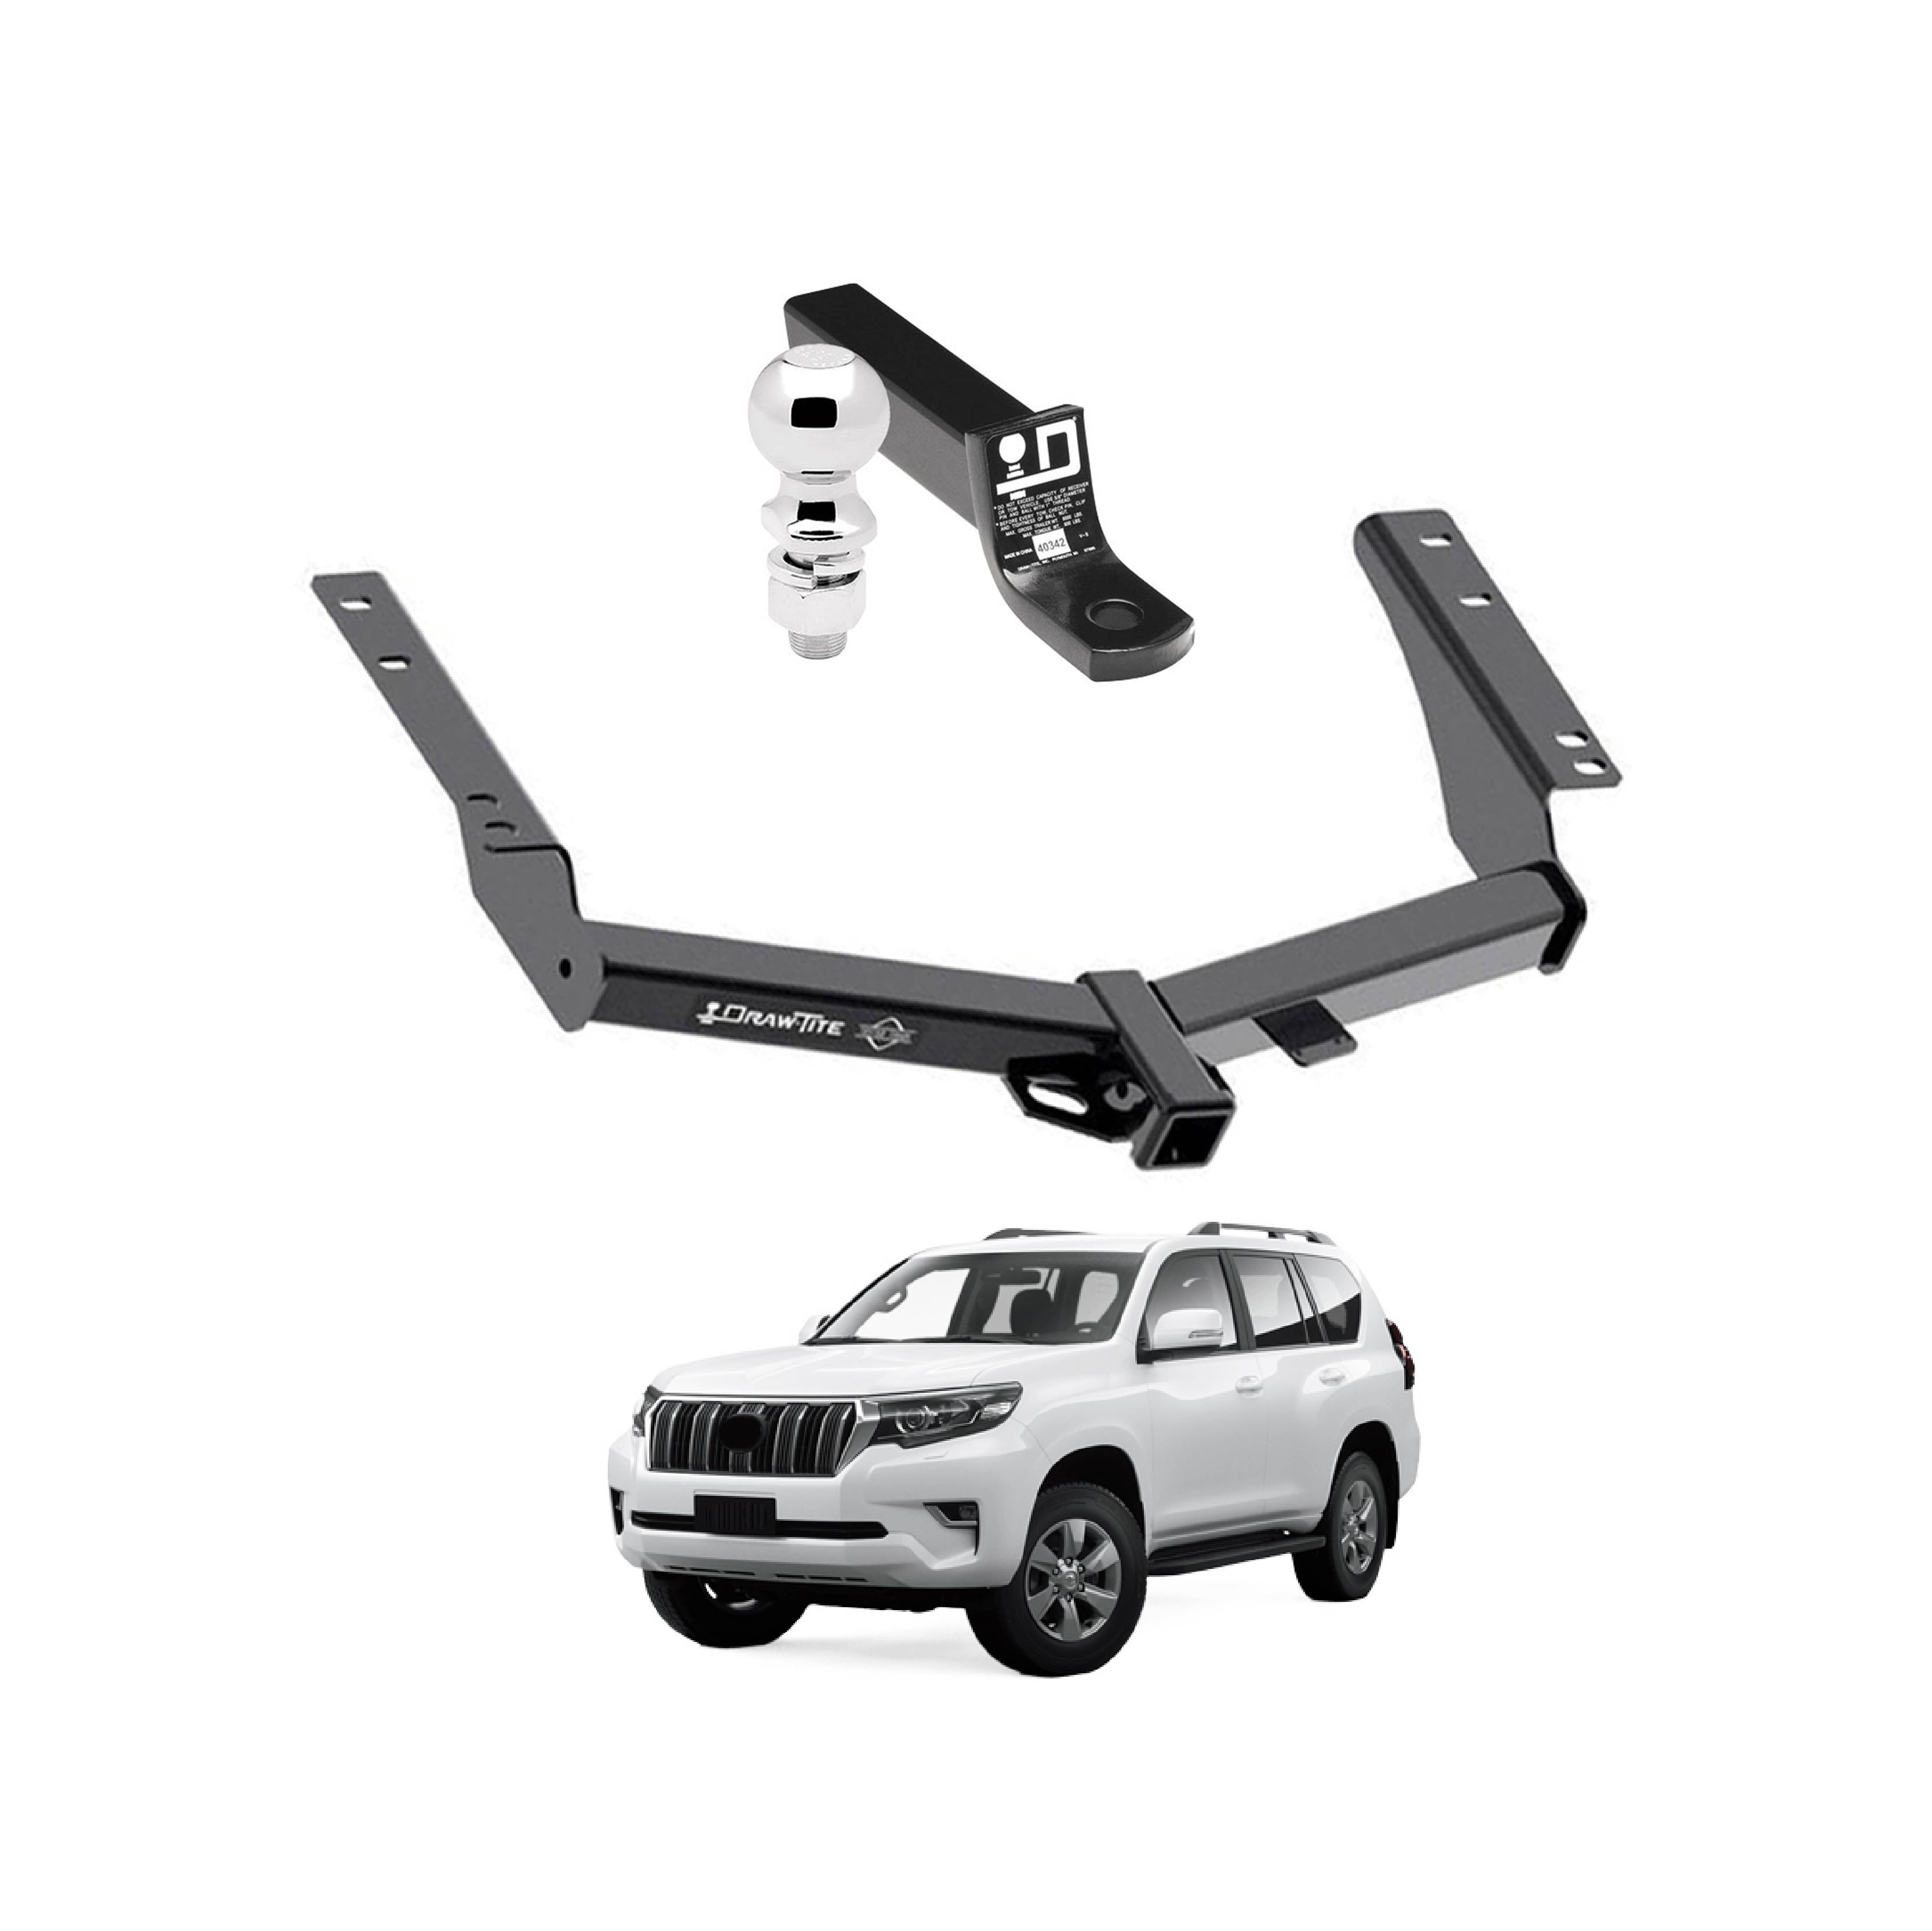 Draw Tite Towing Kit (Frame Receiver + Ball Mount) for 2014-2019 Toyota Prado